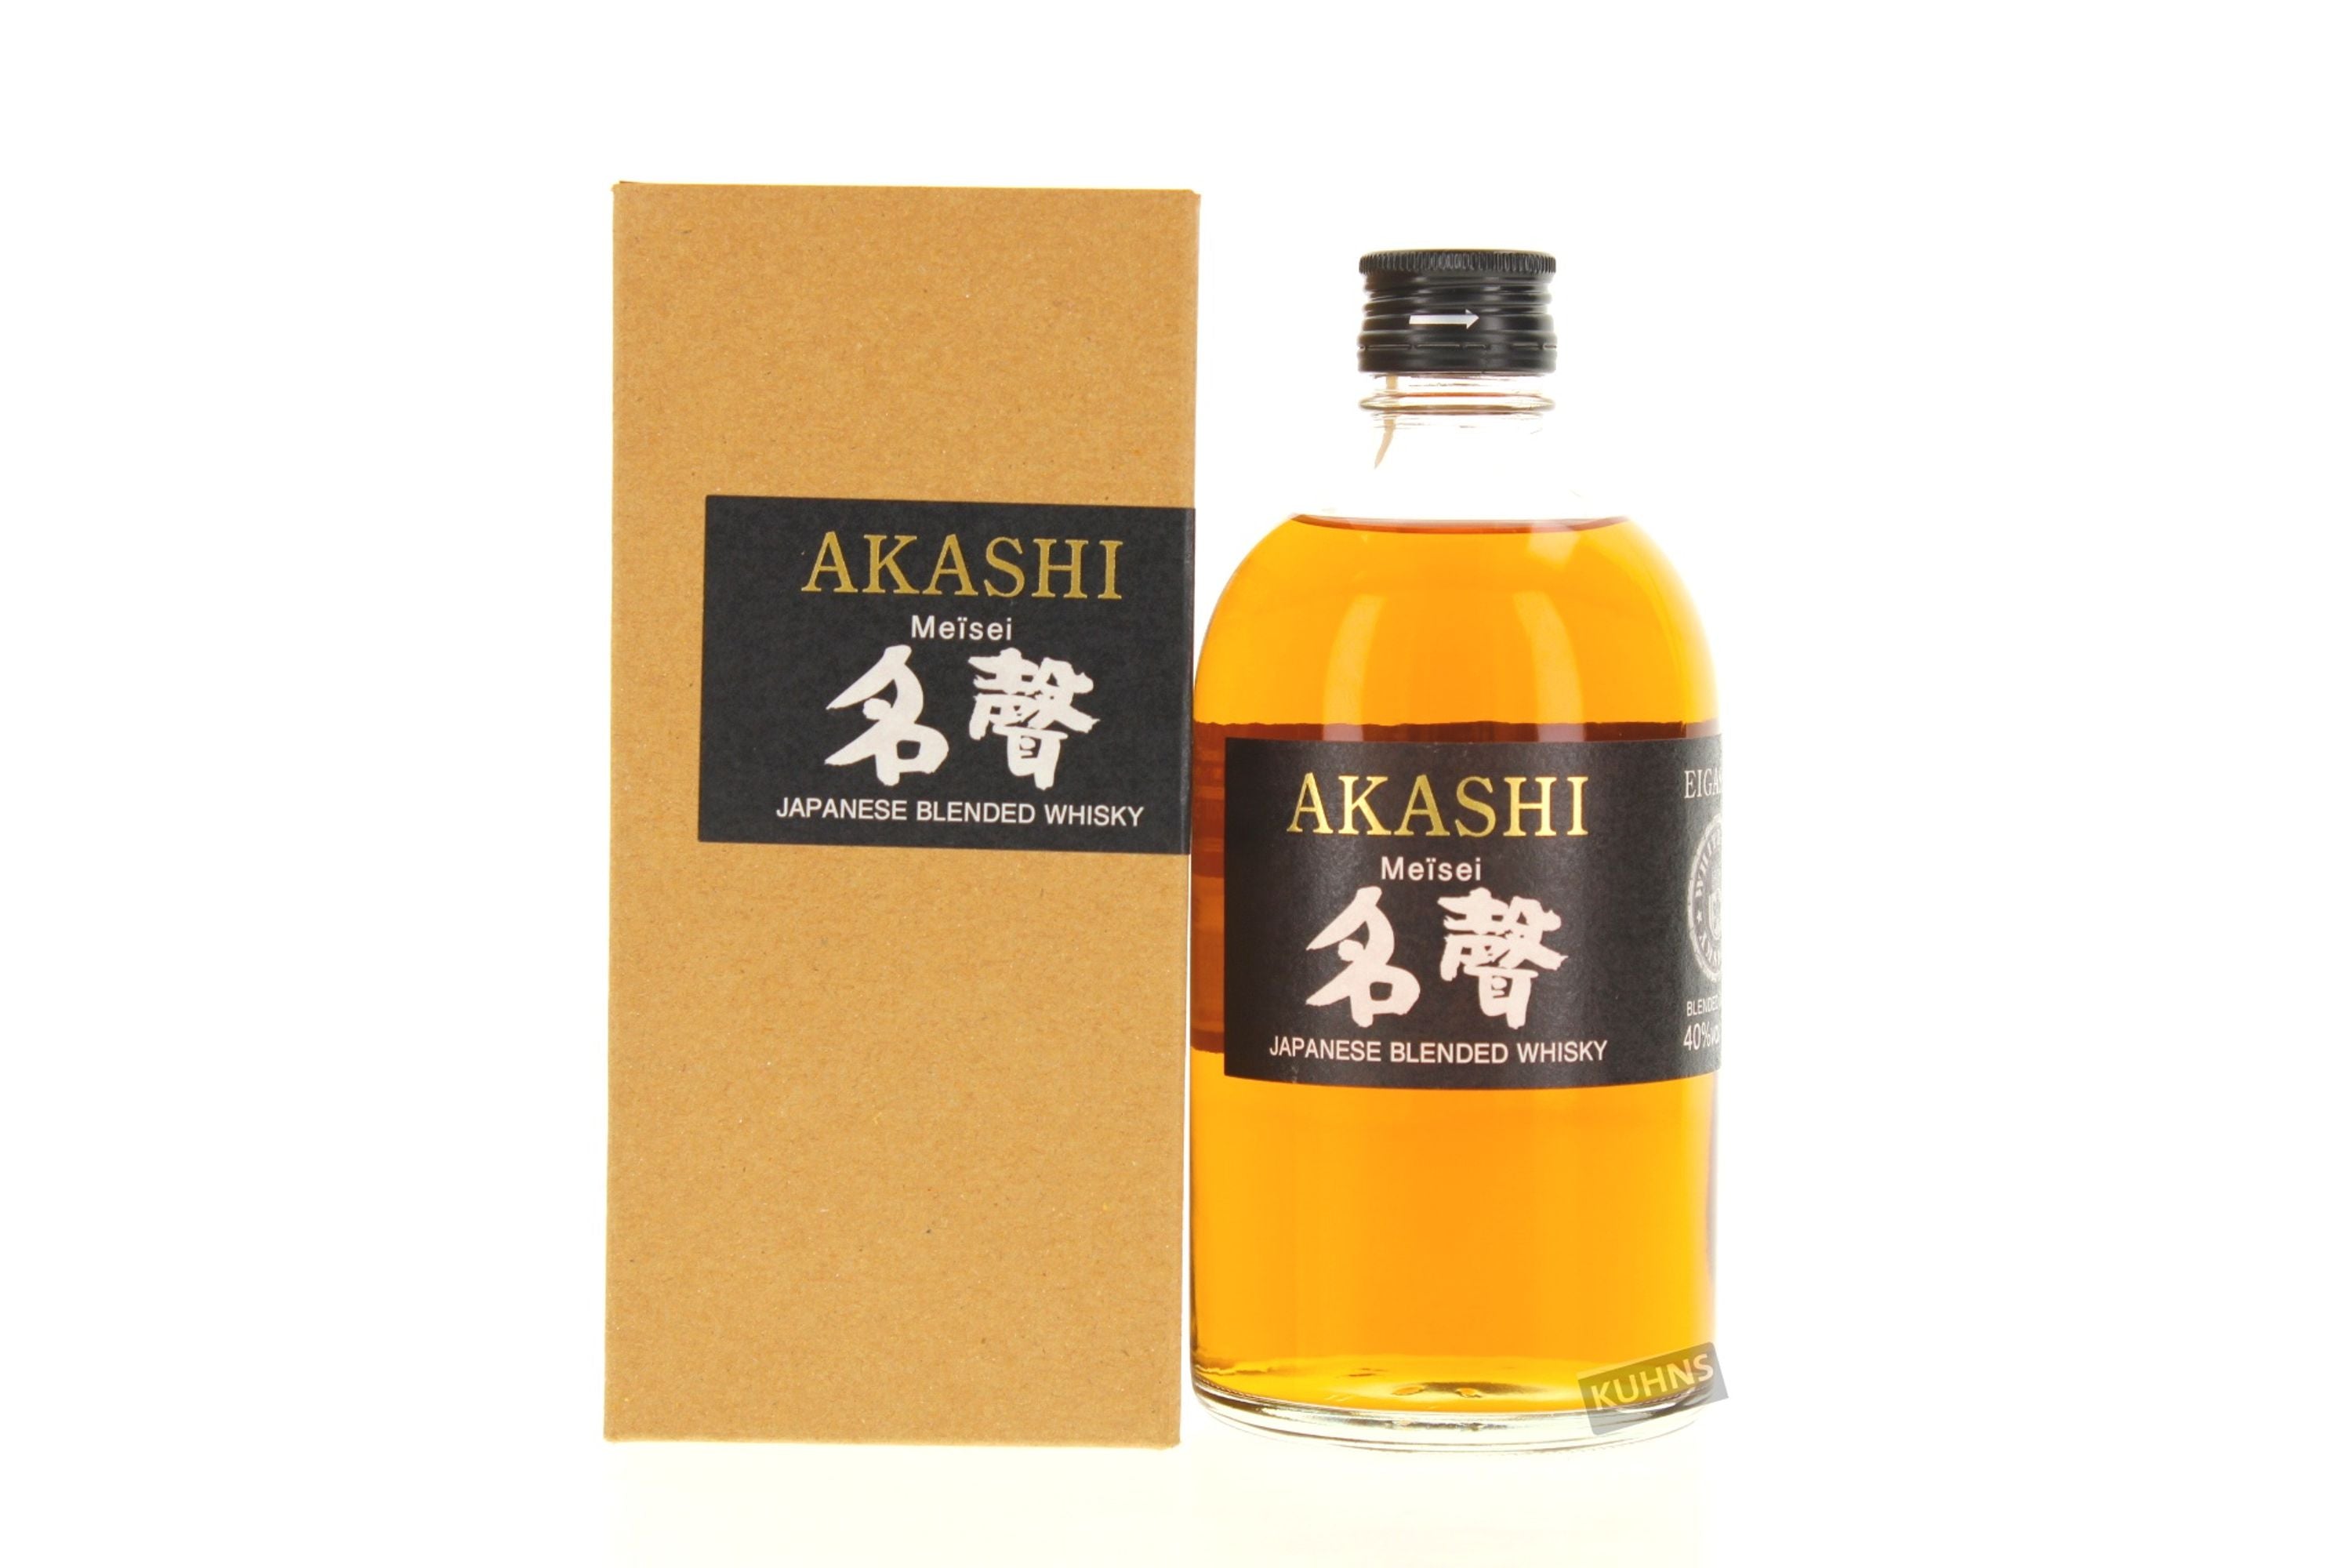 Akashi Meisei 0.5l, alc. 40% ABV Japan Blended Whisky